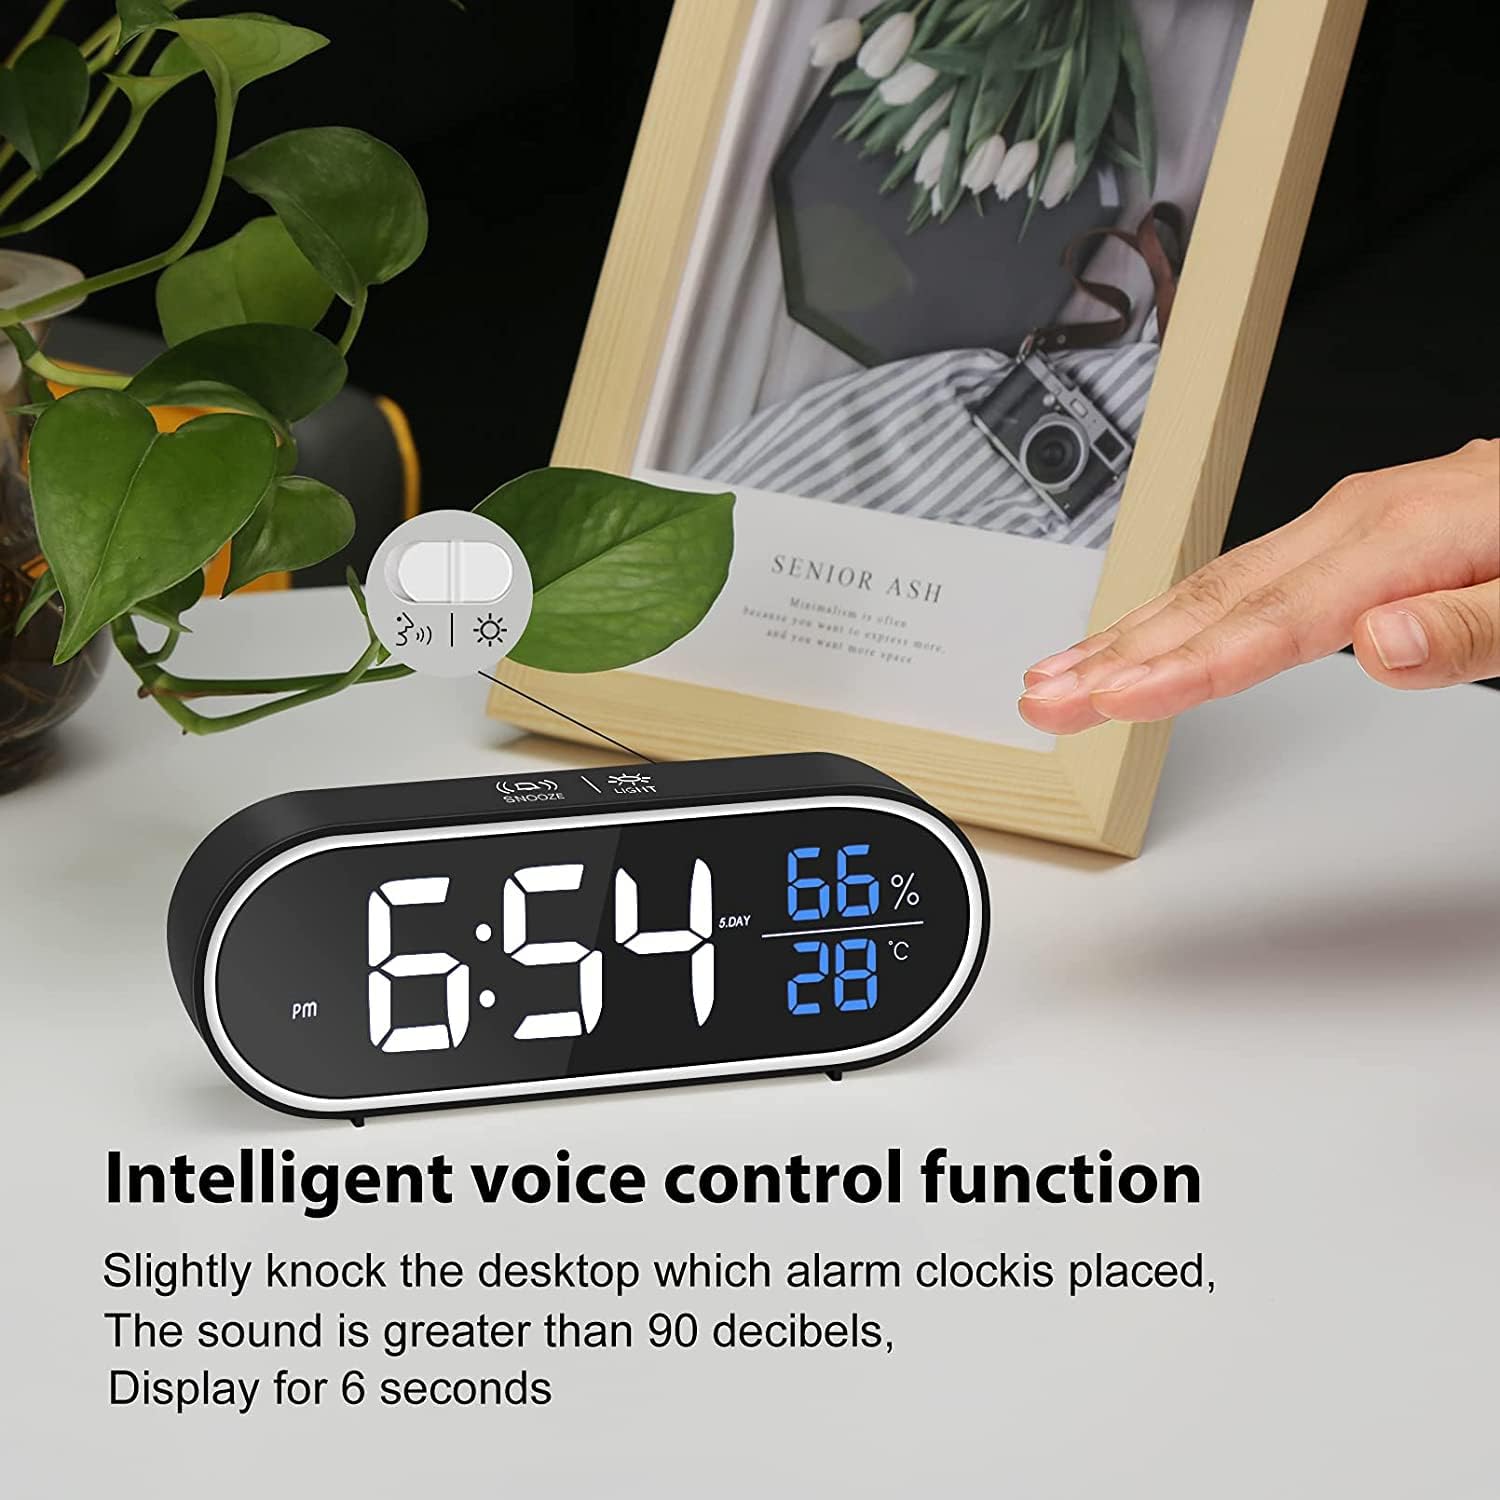 ساعت دیجیتال رومیزی مدل Excefore Digital Alarm Clock - ارسال 10 الی 15 روز کاری